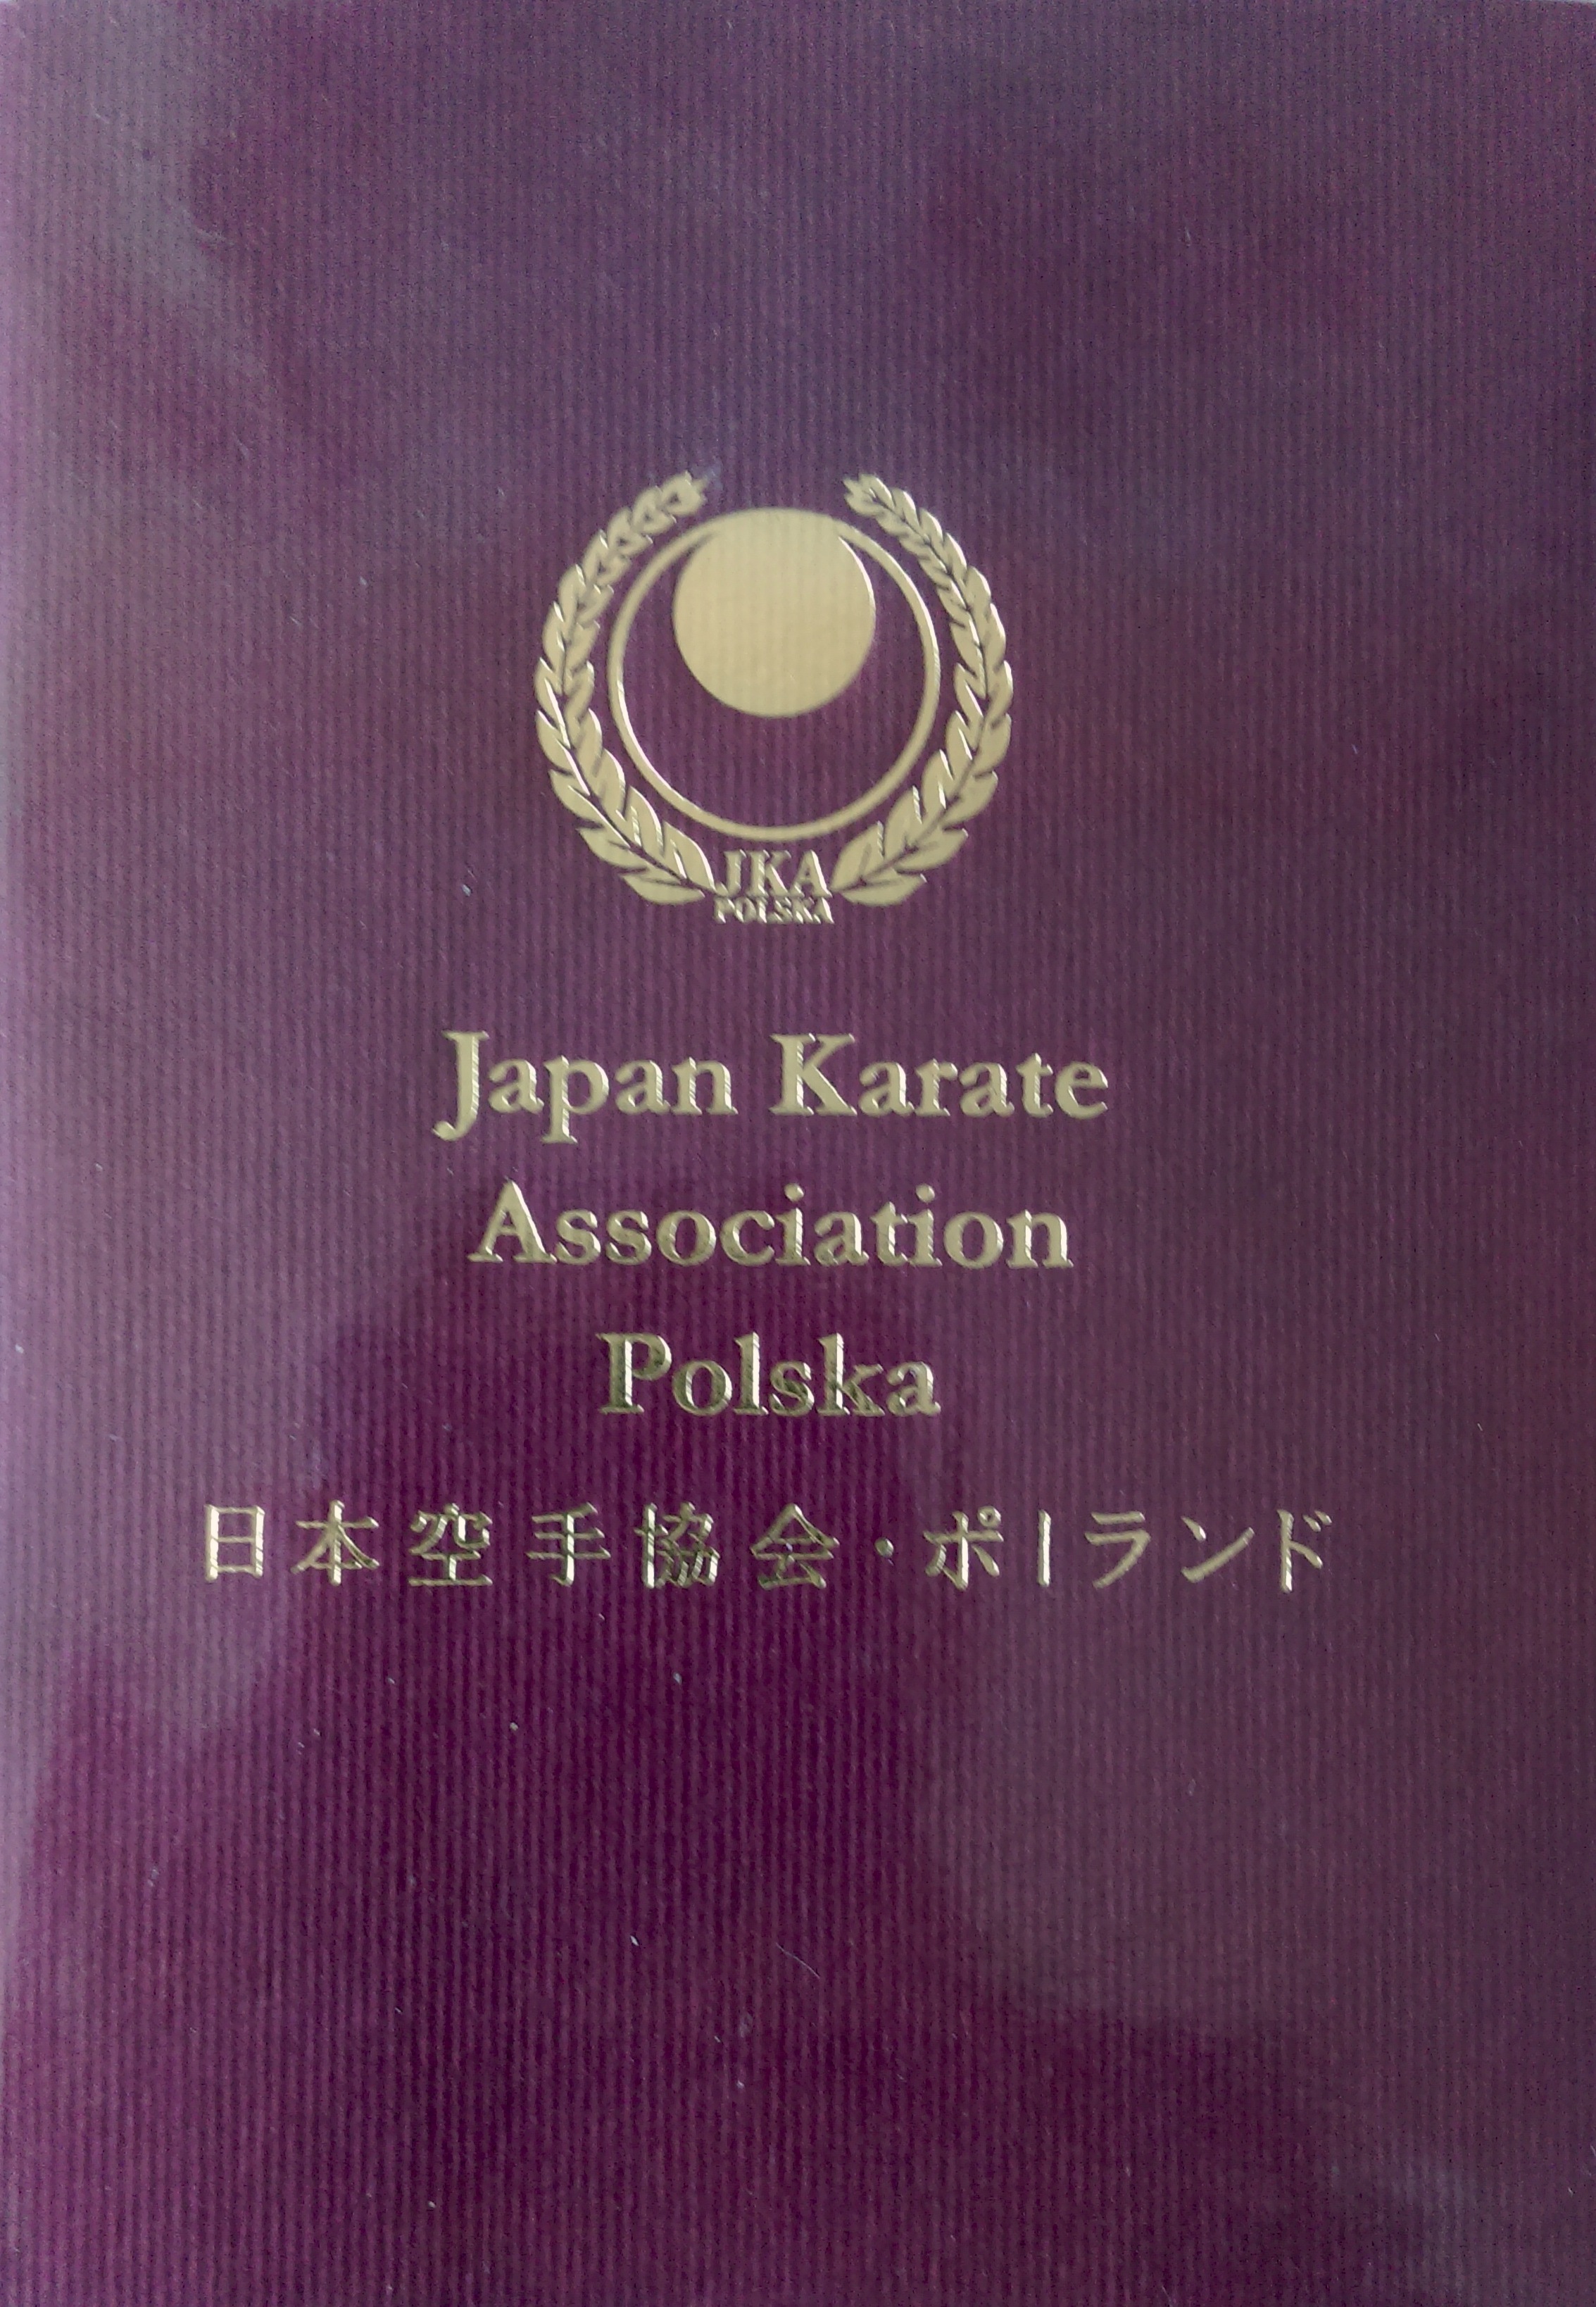 Witamy w Japan Karate Association!